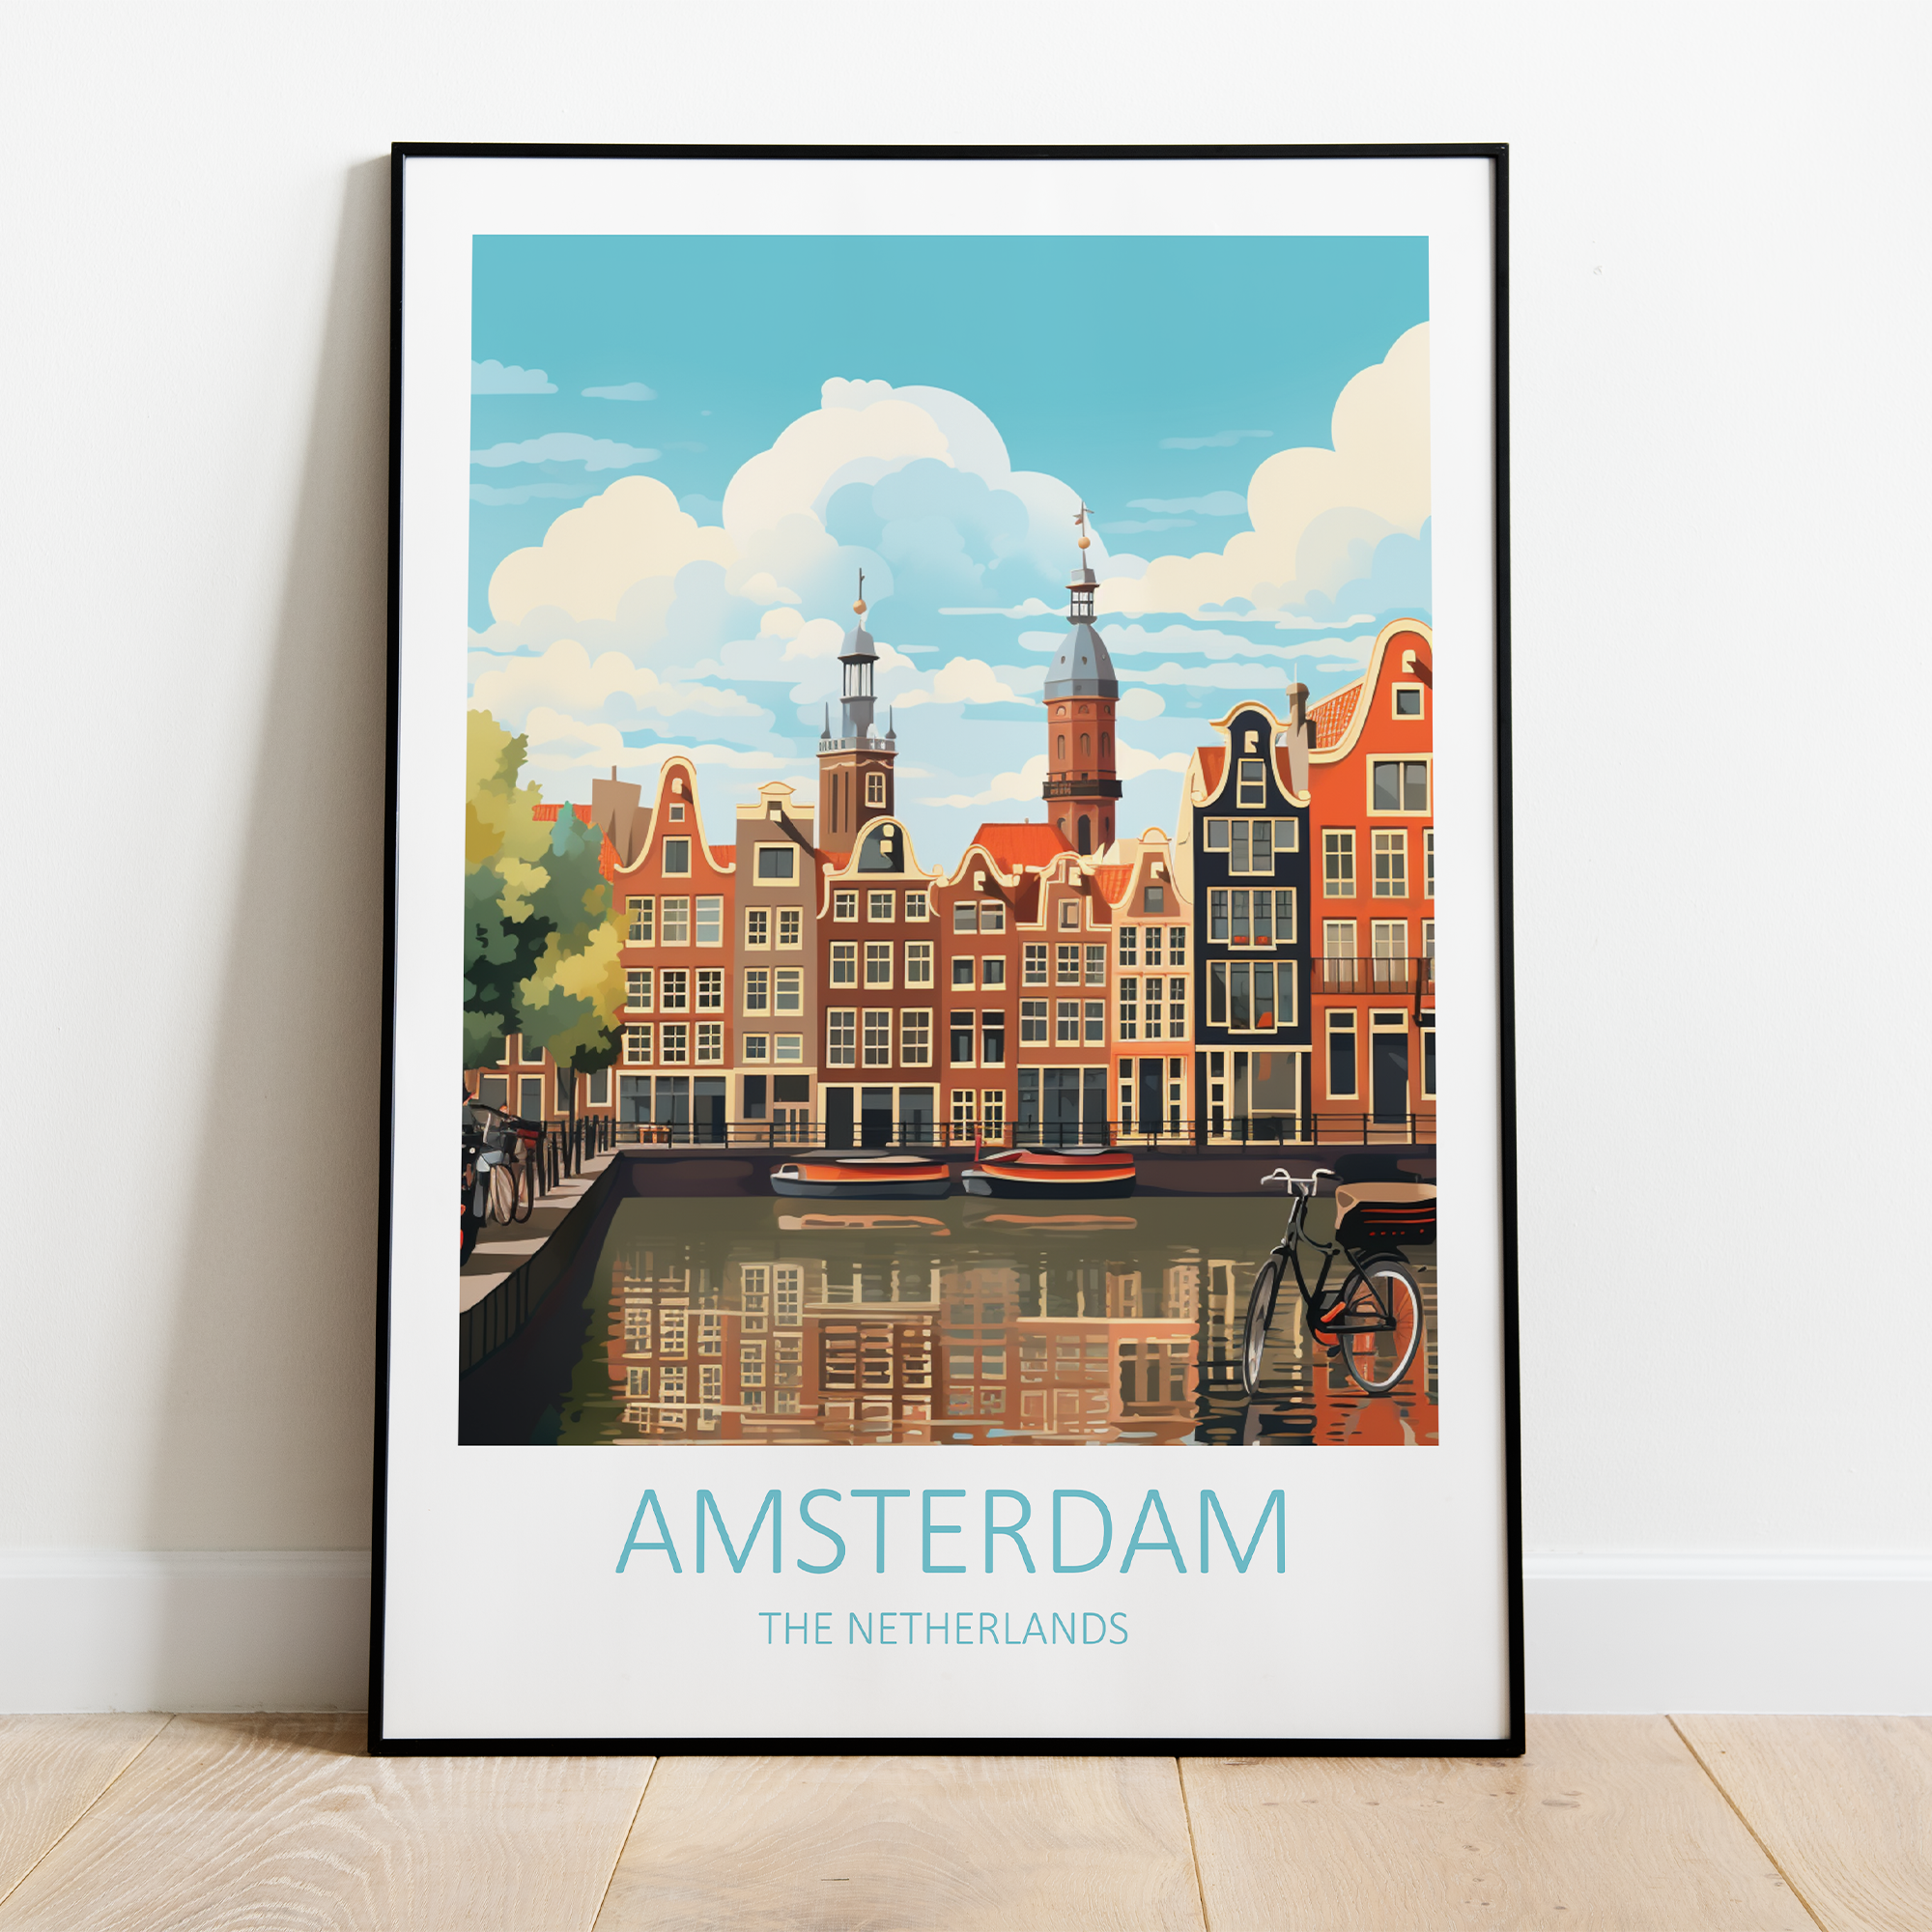 Billede af Amsterdam i Holland - plakat 1